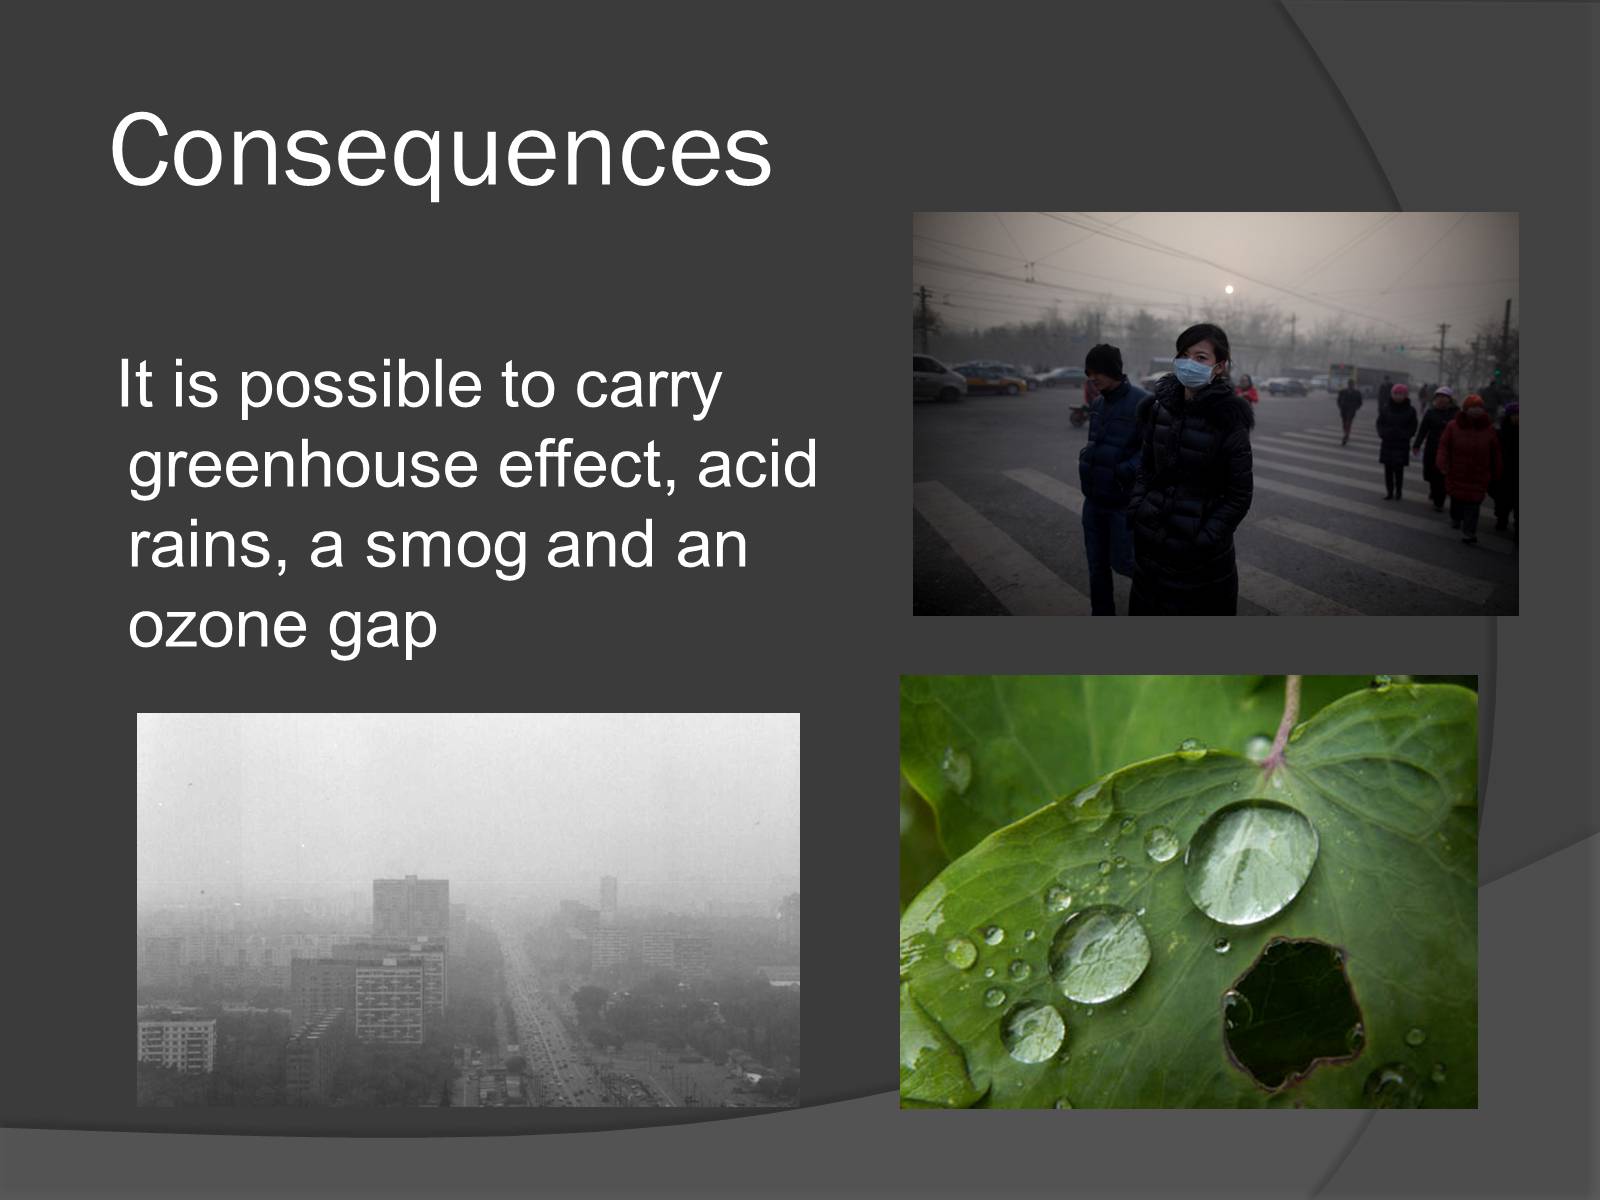 Кислотный смог. Смог кислотные дожди. Consequences of pollution. Презентация по английскому на тему загрязнение окружающей среды. Парниковый эффект и кислотные дожди.